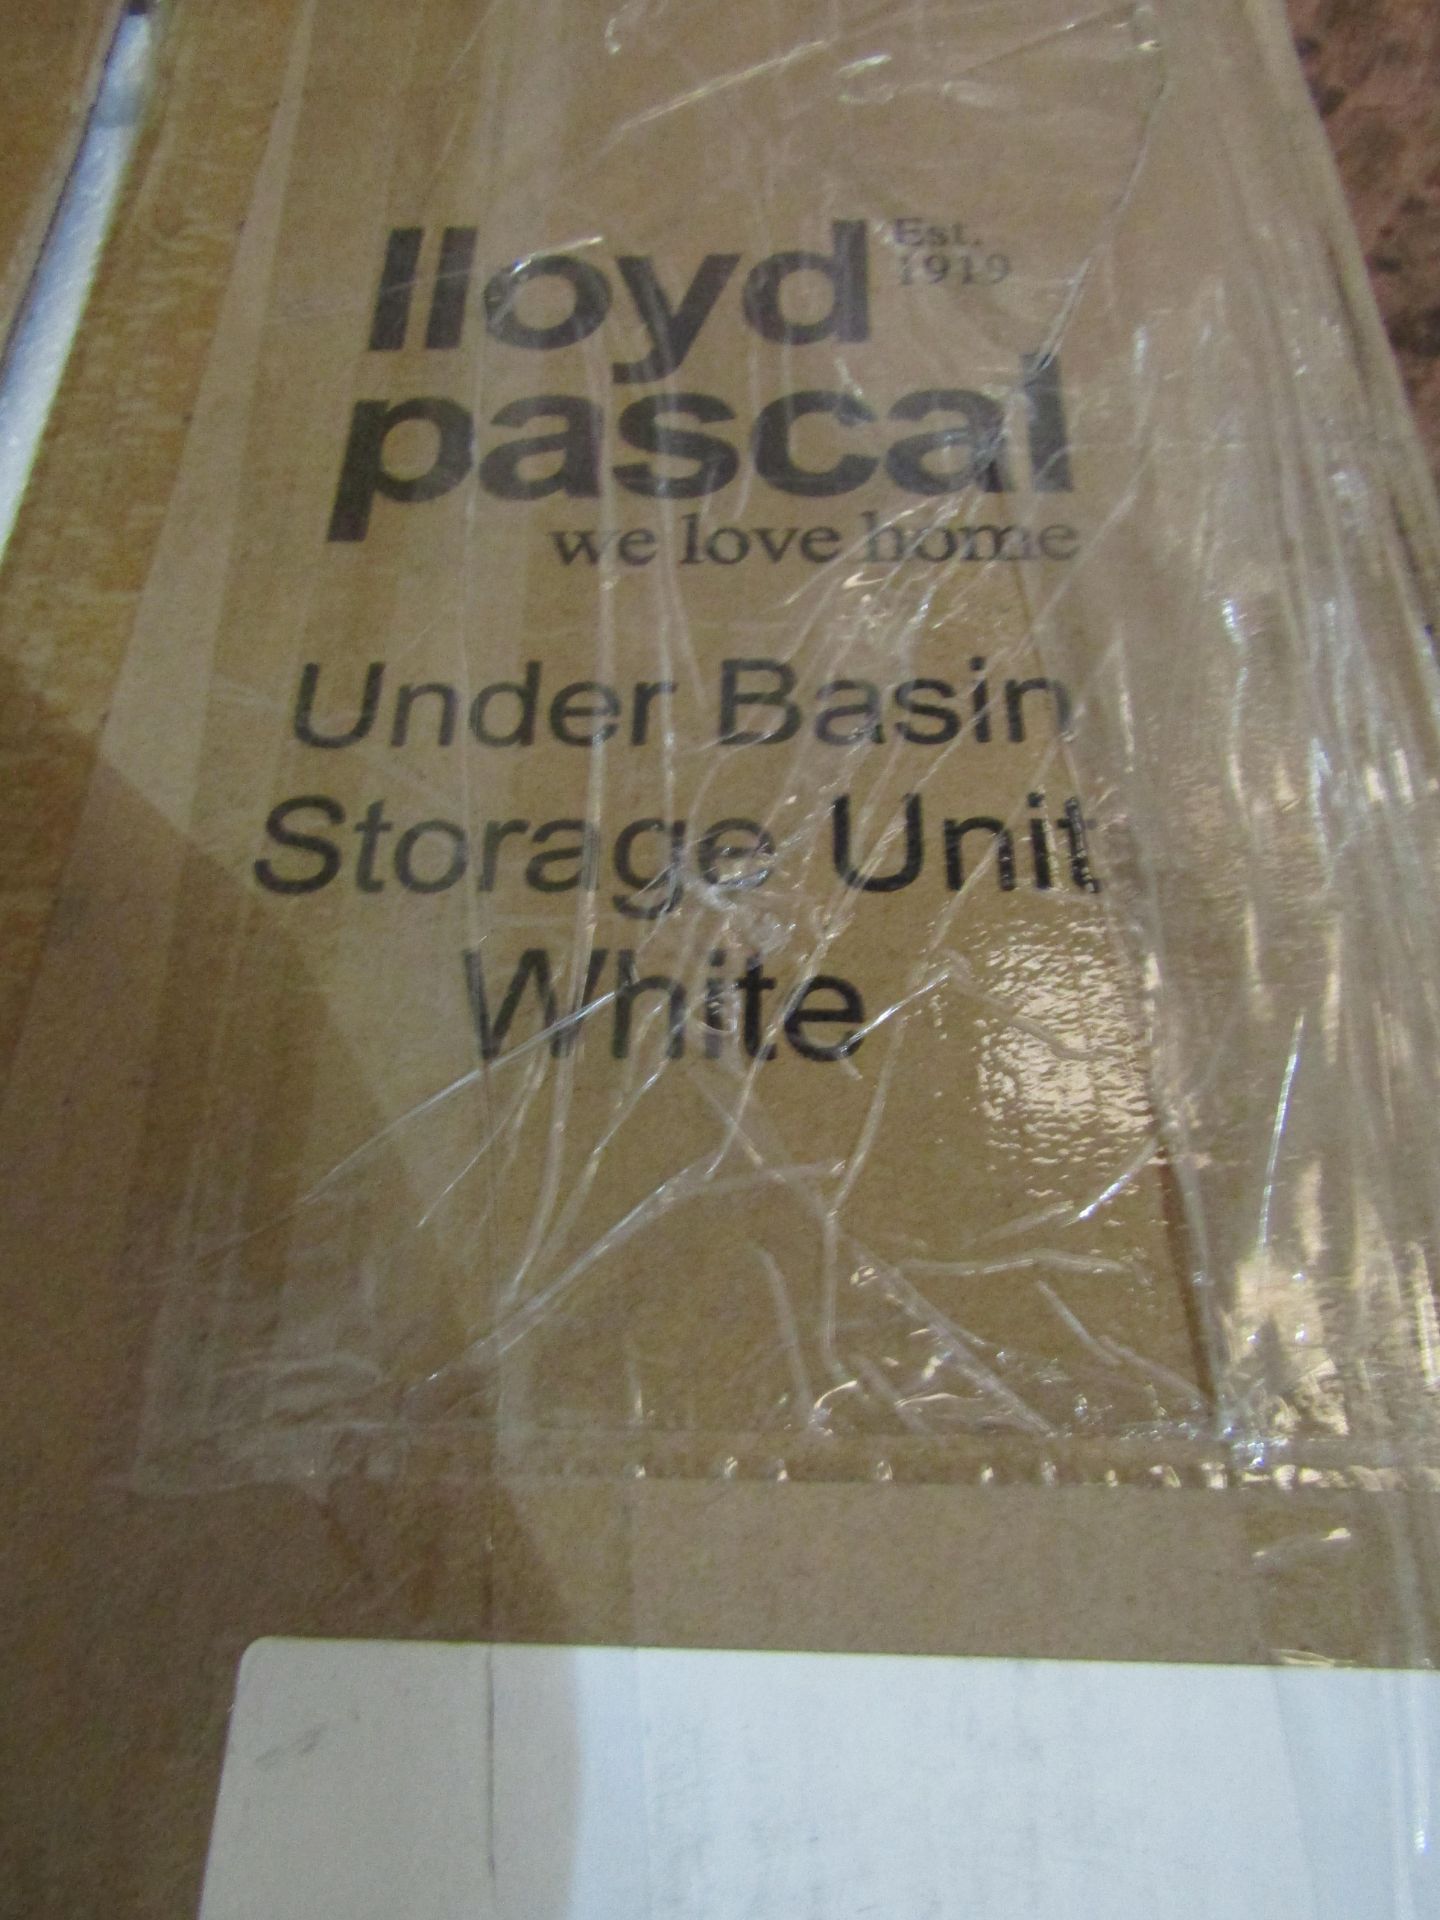 Lloyd Pascal Under Basin Storage Unit, White. RRP £79 - Image 2 of 2